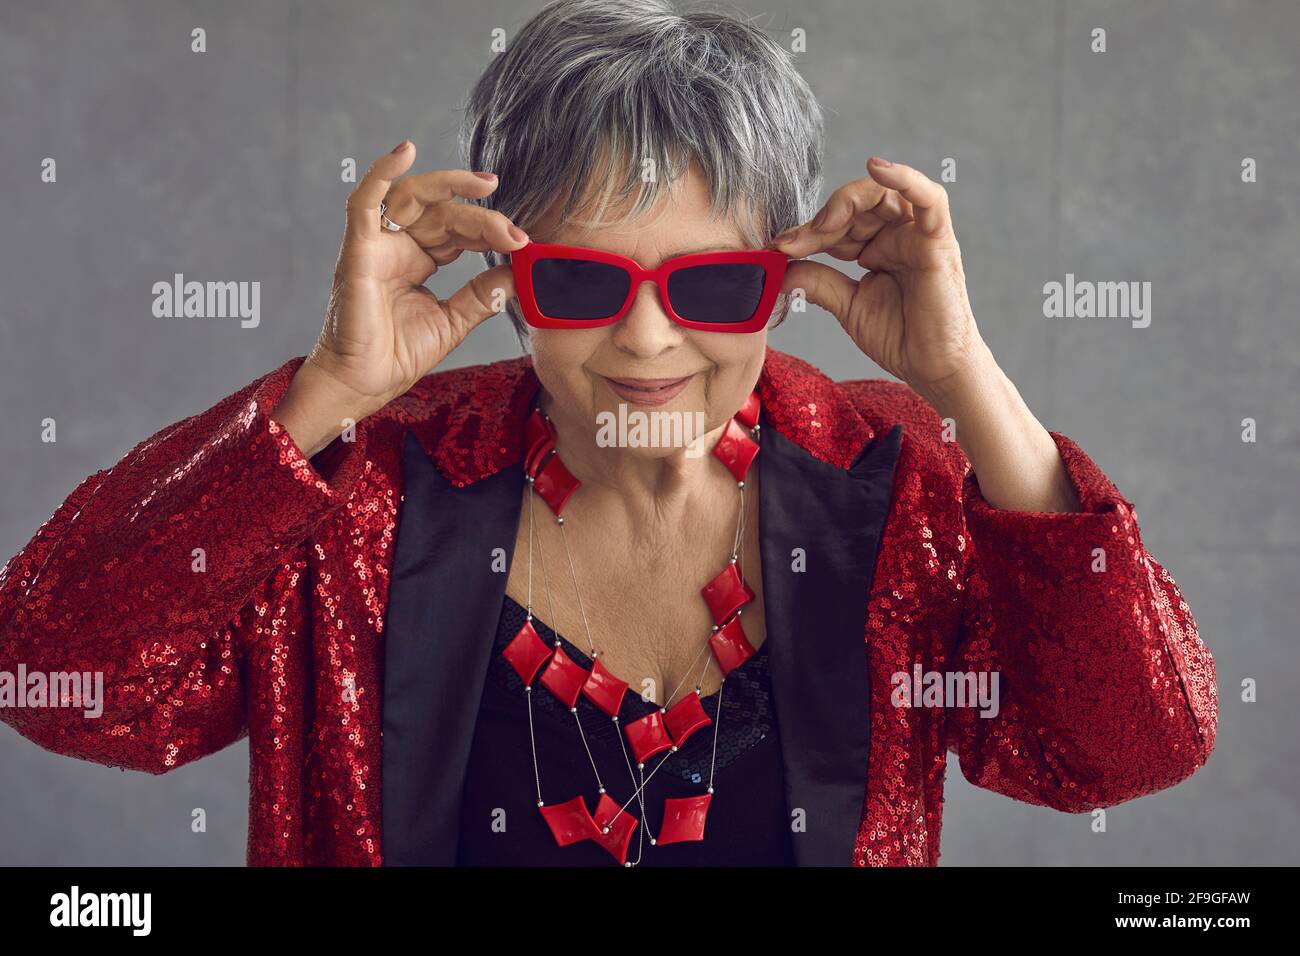 Porträt von lustigen glücklich zuversichtlich, ältere Frau in roten Pailletten Outfit und coole Sonnenbrille Stockfoto